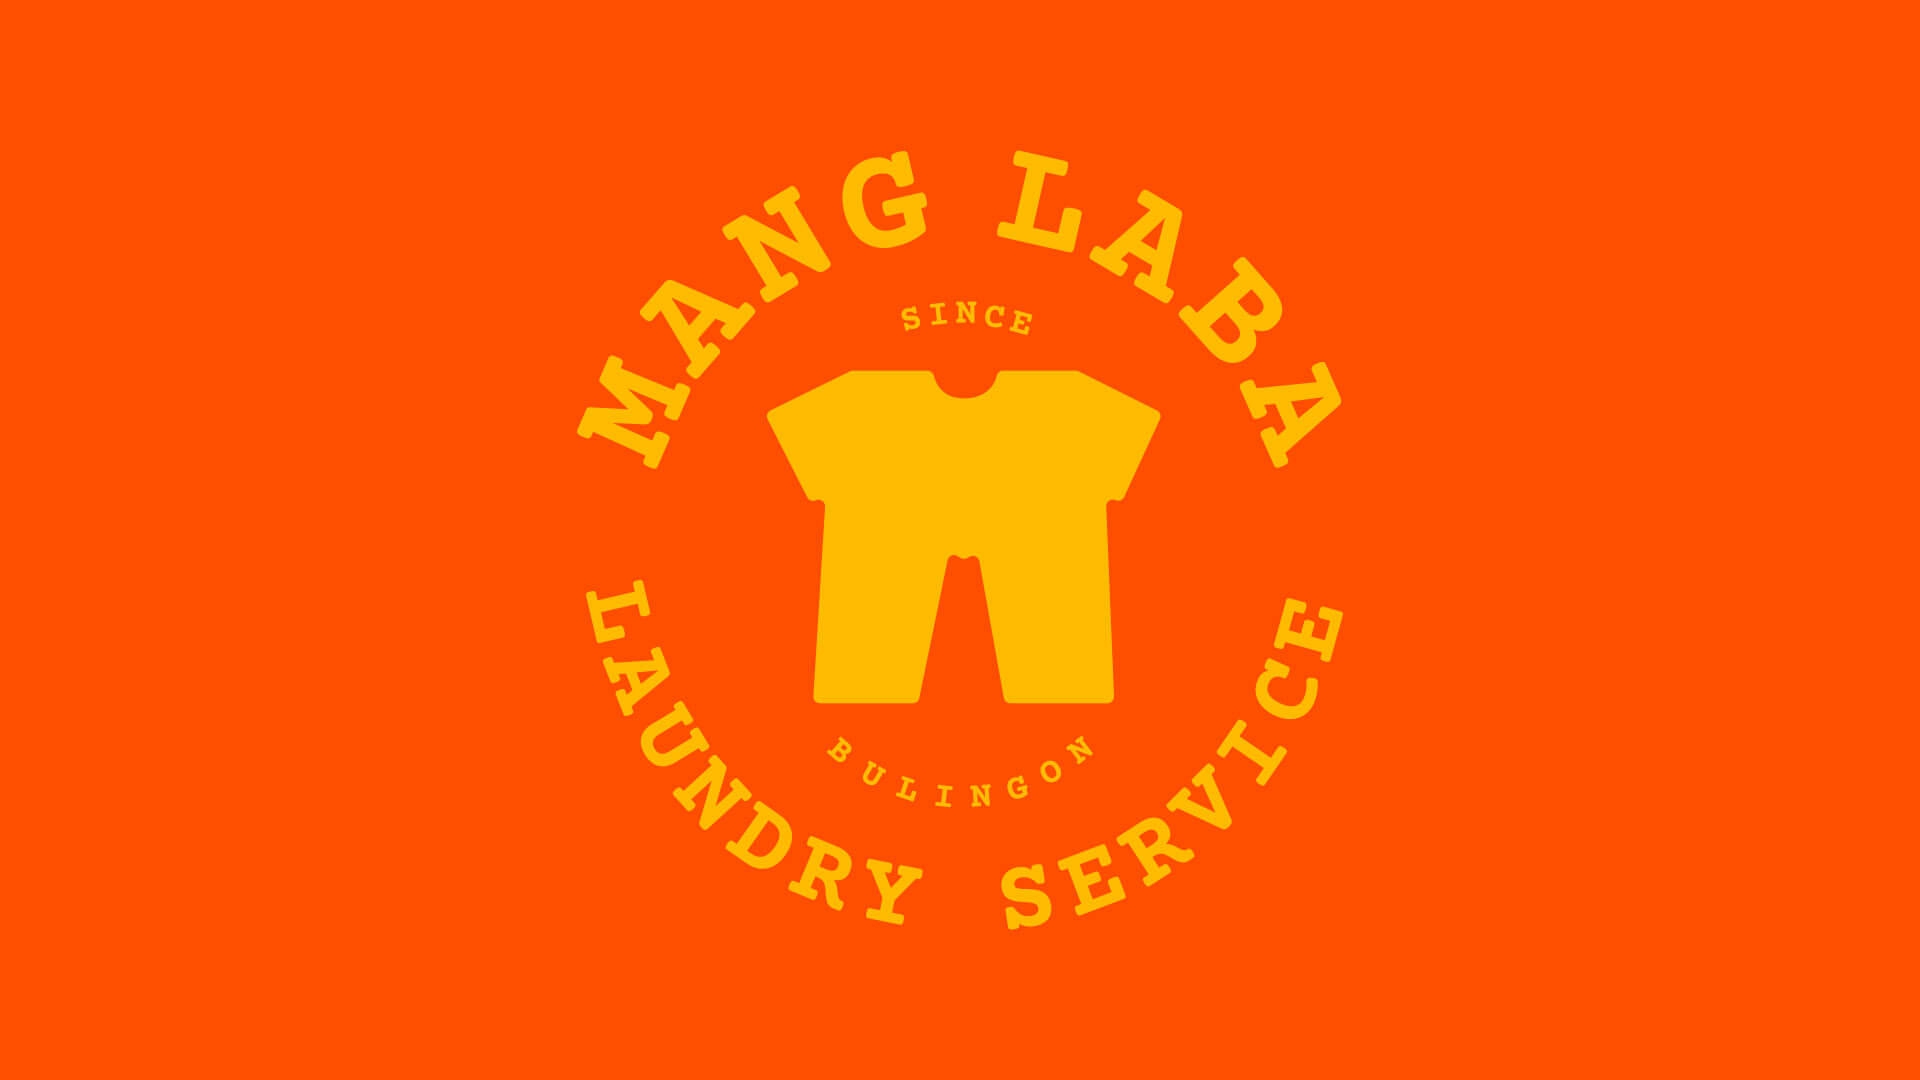 Manglaba Laundry Service - orange